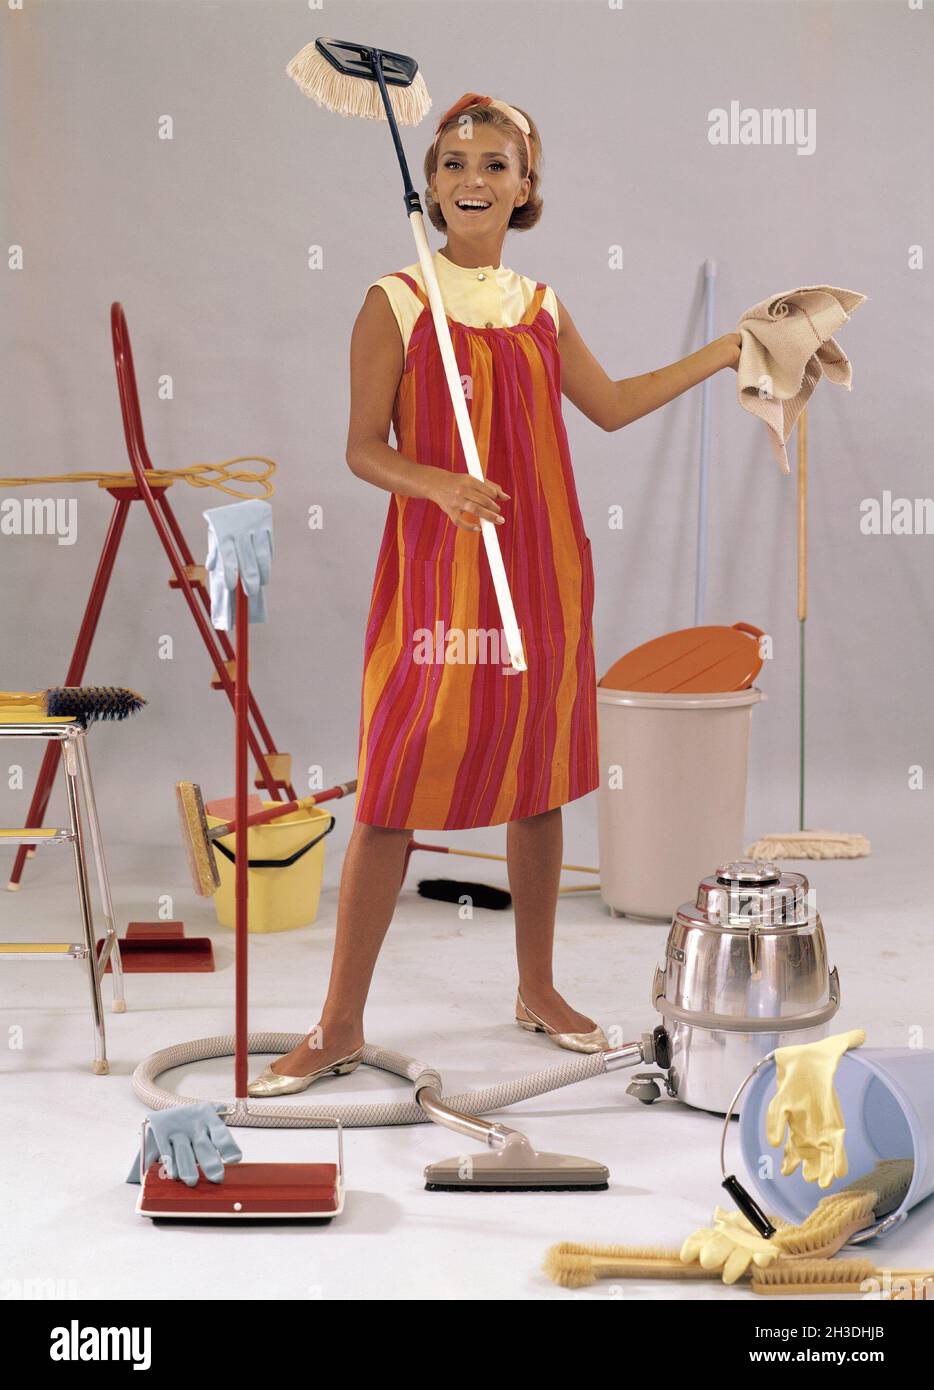 Día de limpieza en el 1960s. Una mujer joven se representa con mopas,  aspiradora, cubos, paños. Cosas y objetos típicamente usados en el 1960s al  limpiar la casa Fotografía de stock -